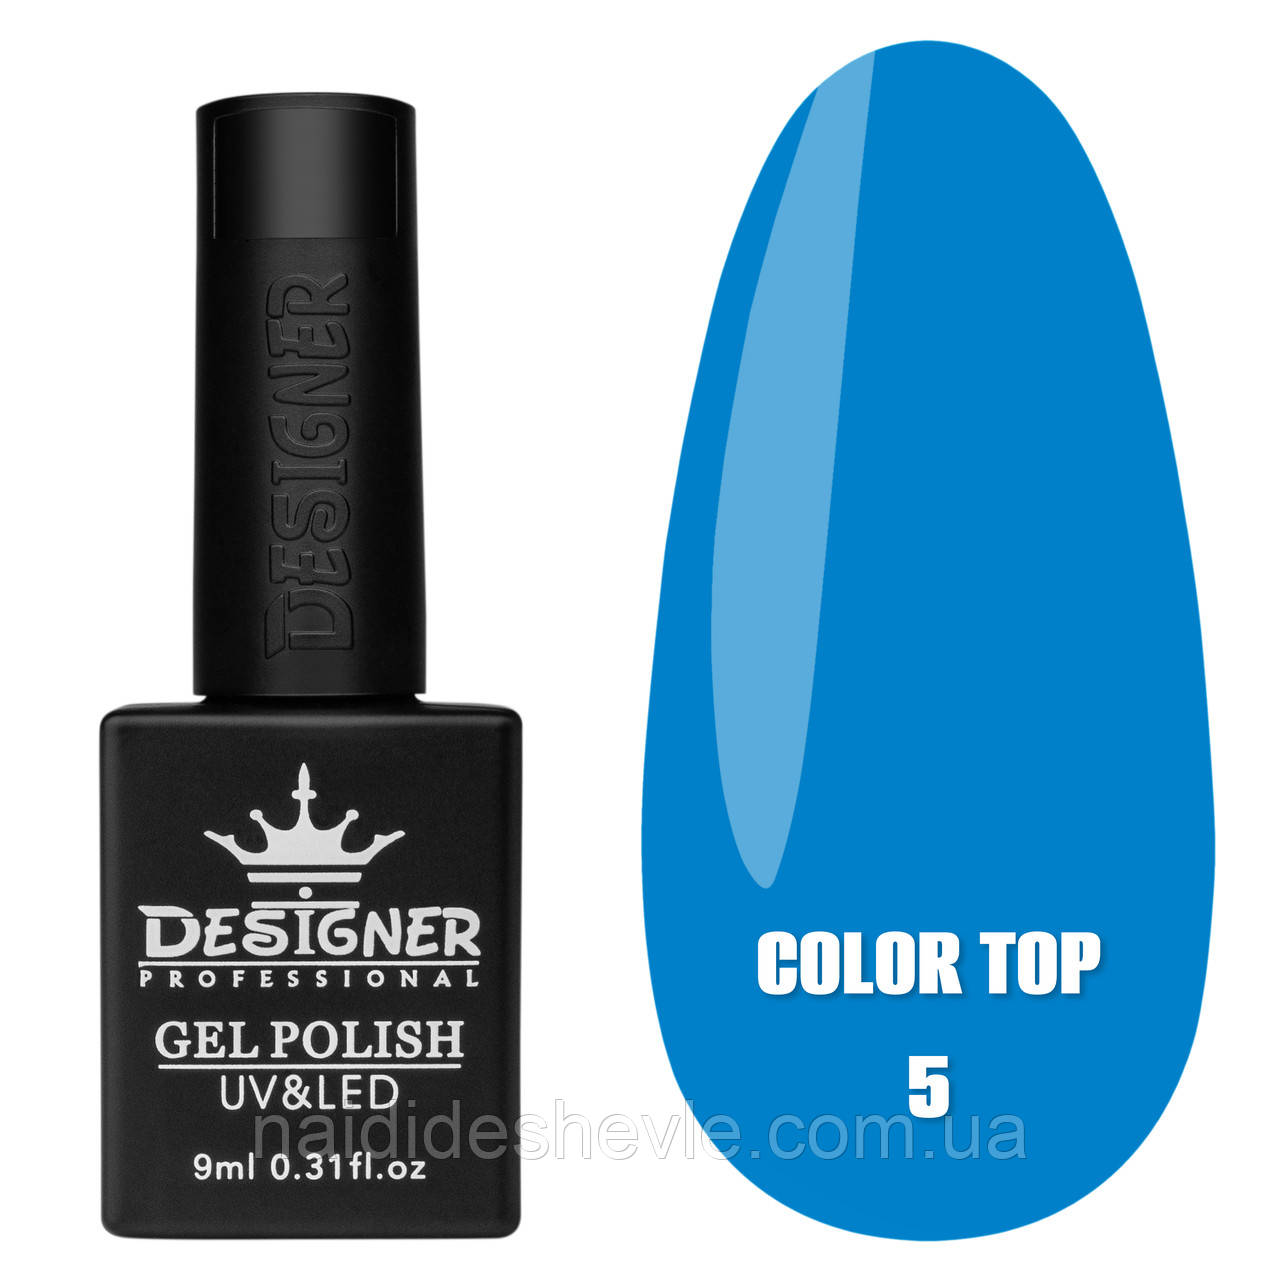 Color Top Дизайнер (9 мл.) - кольорове топове покриття для нігтів з вітражним ефектом Синій 05